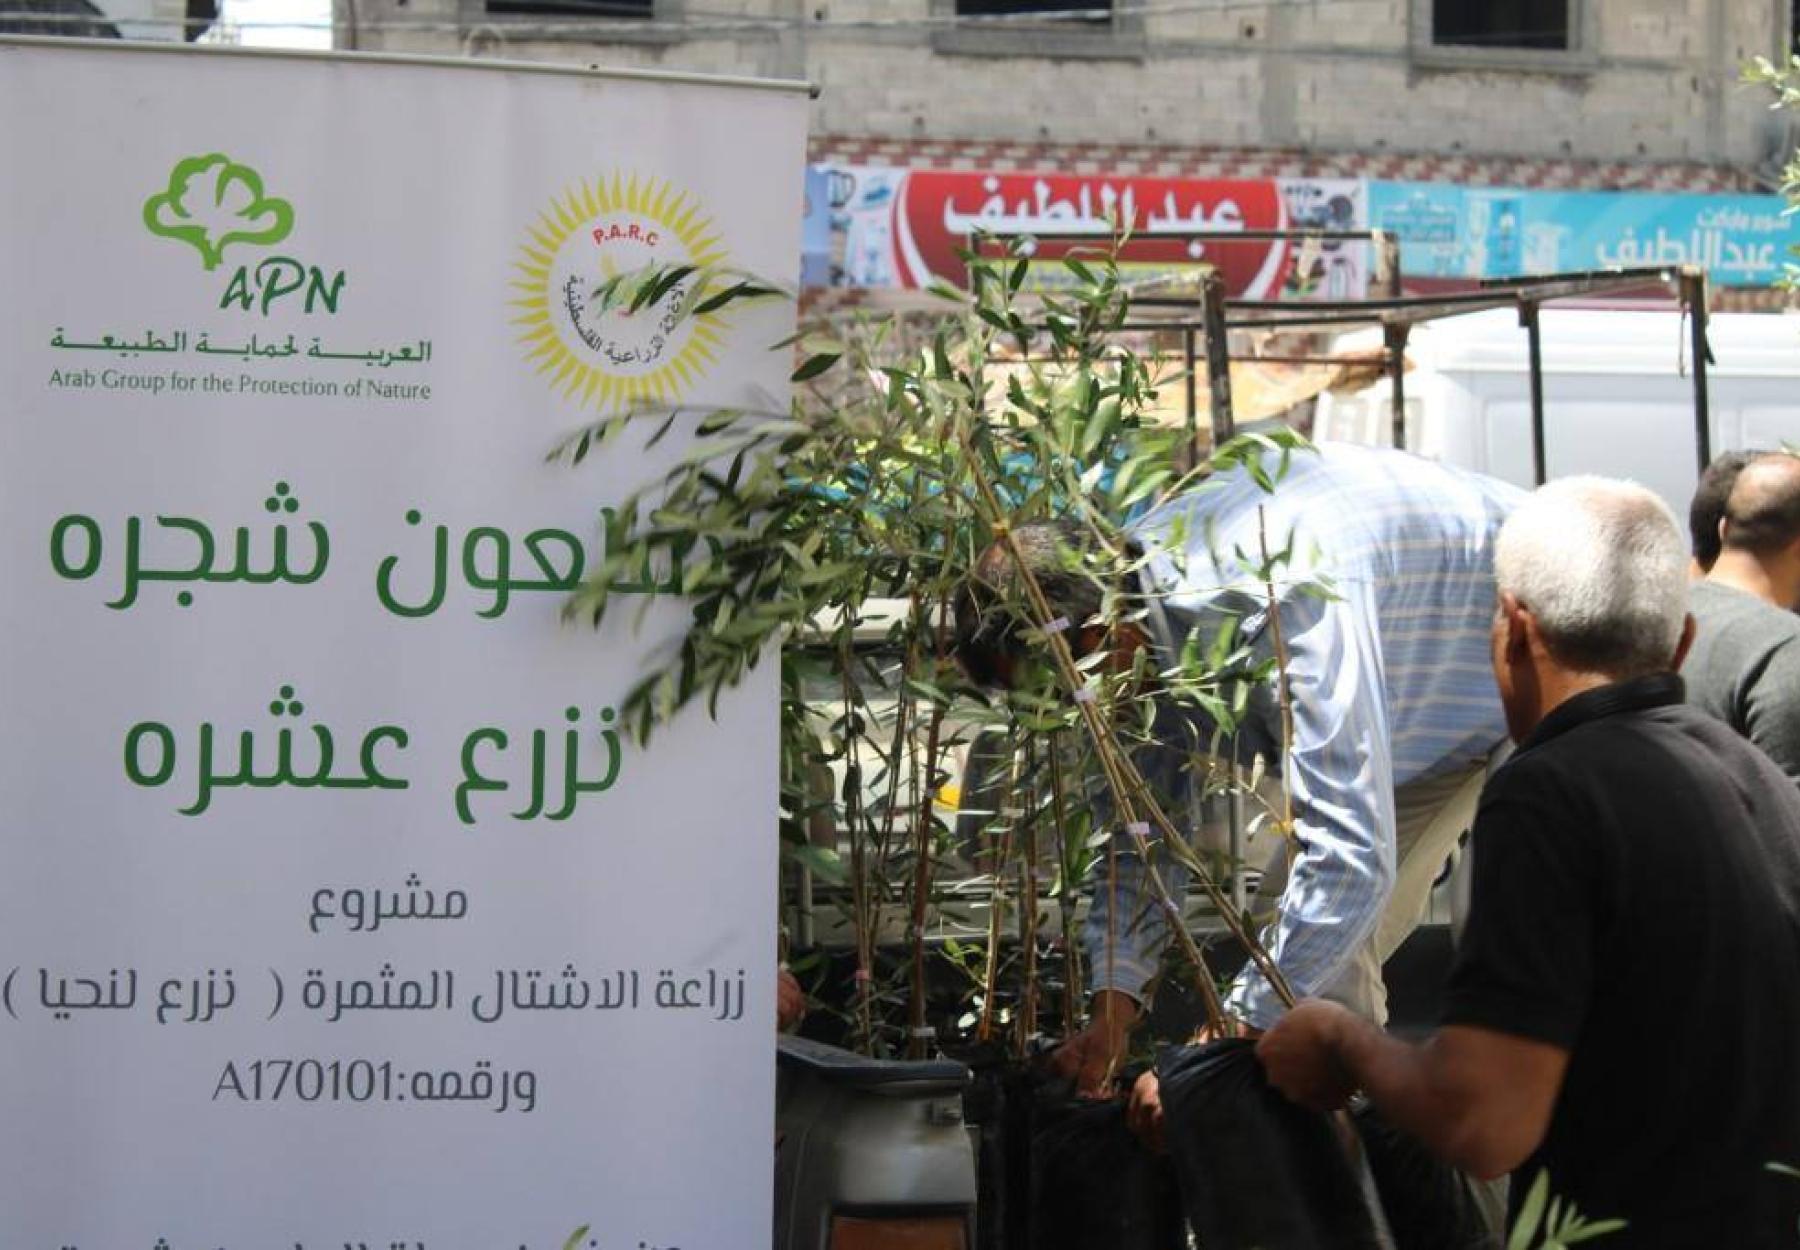 العربية لحماية الطبيعة تحيي وتزرع 15,000 شجرة مثمرة جديدة في قطاع غزة